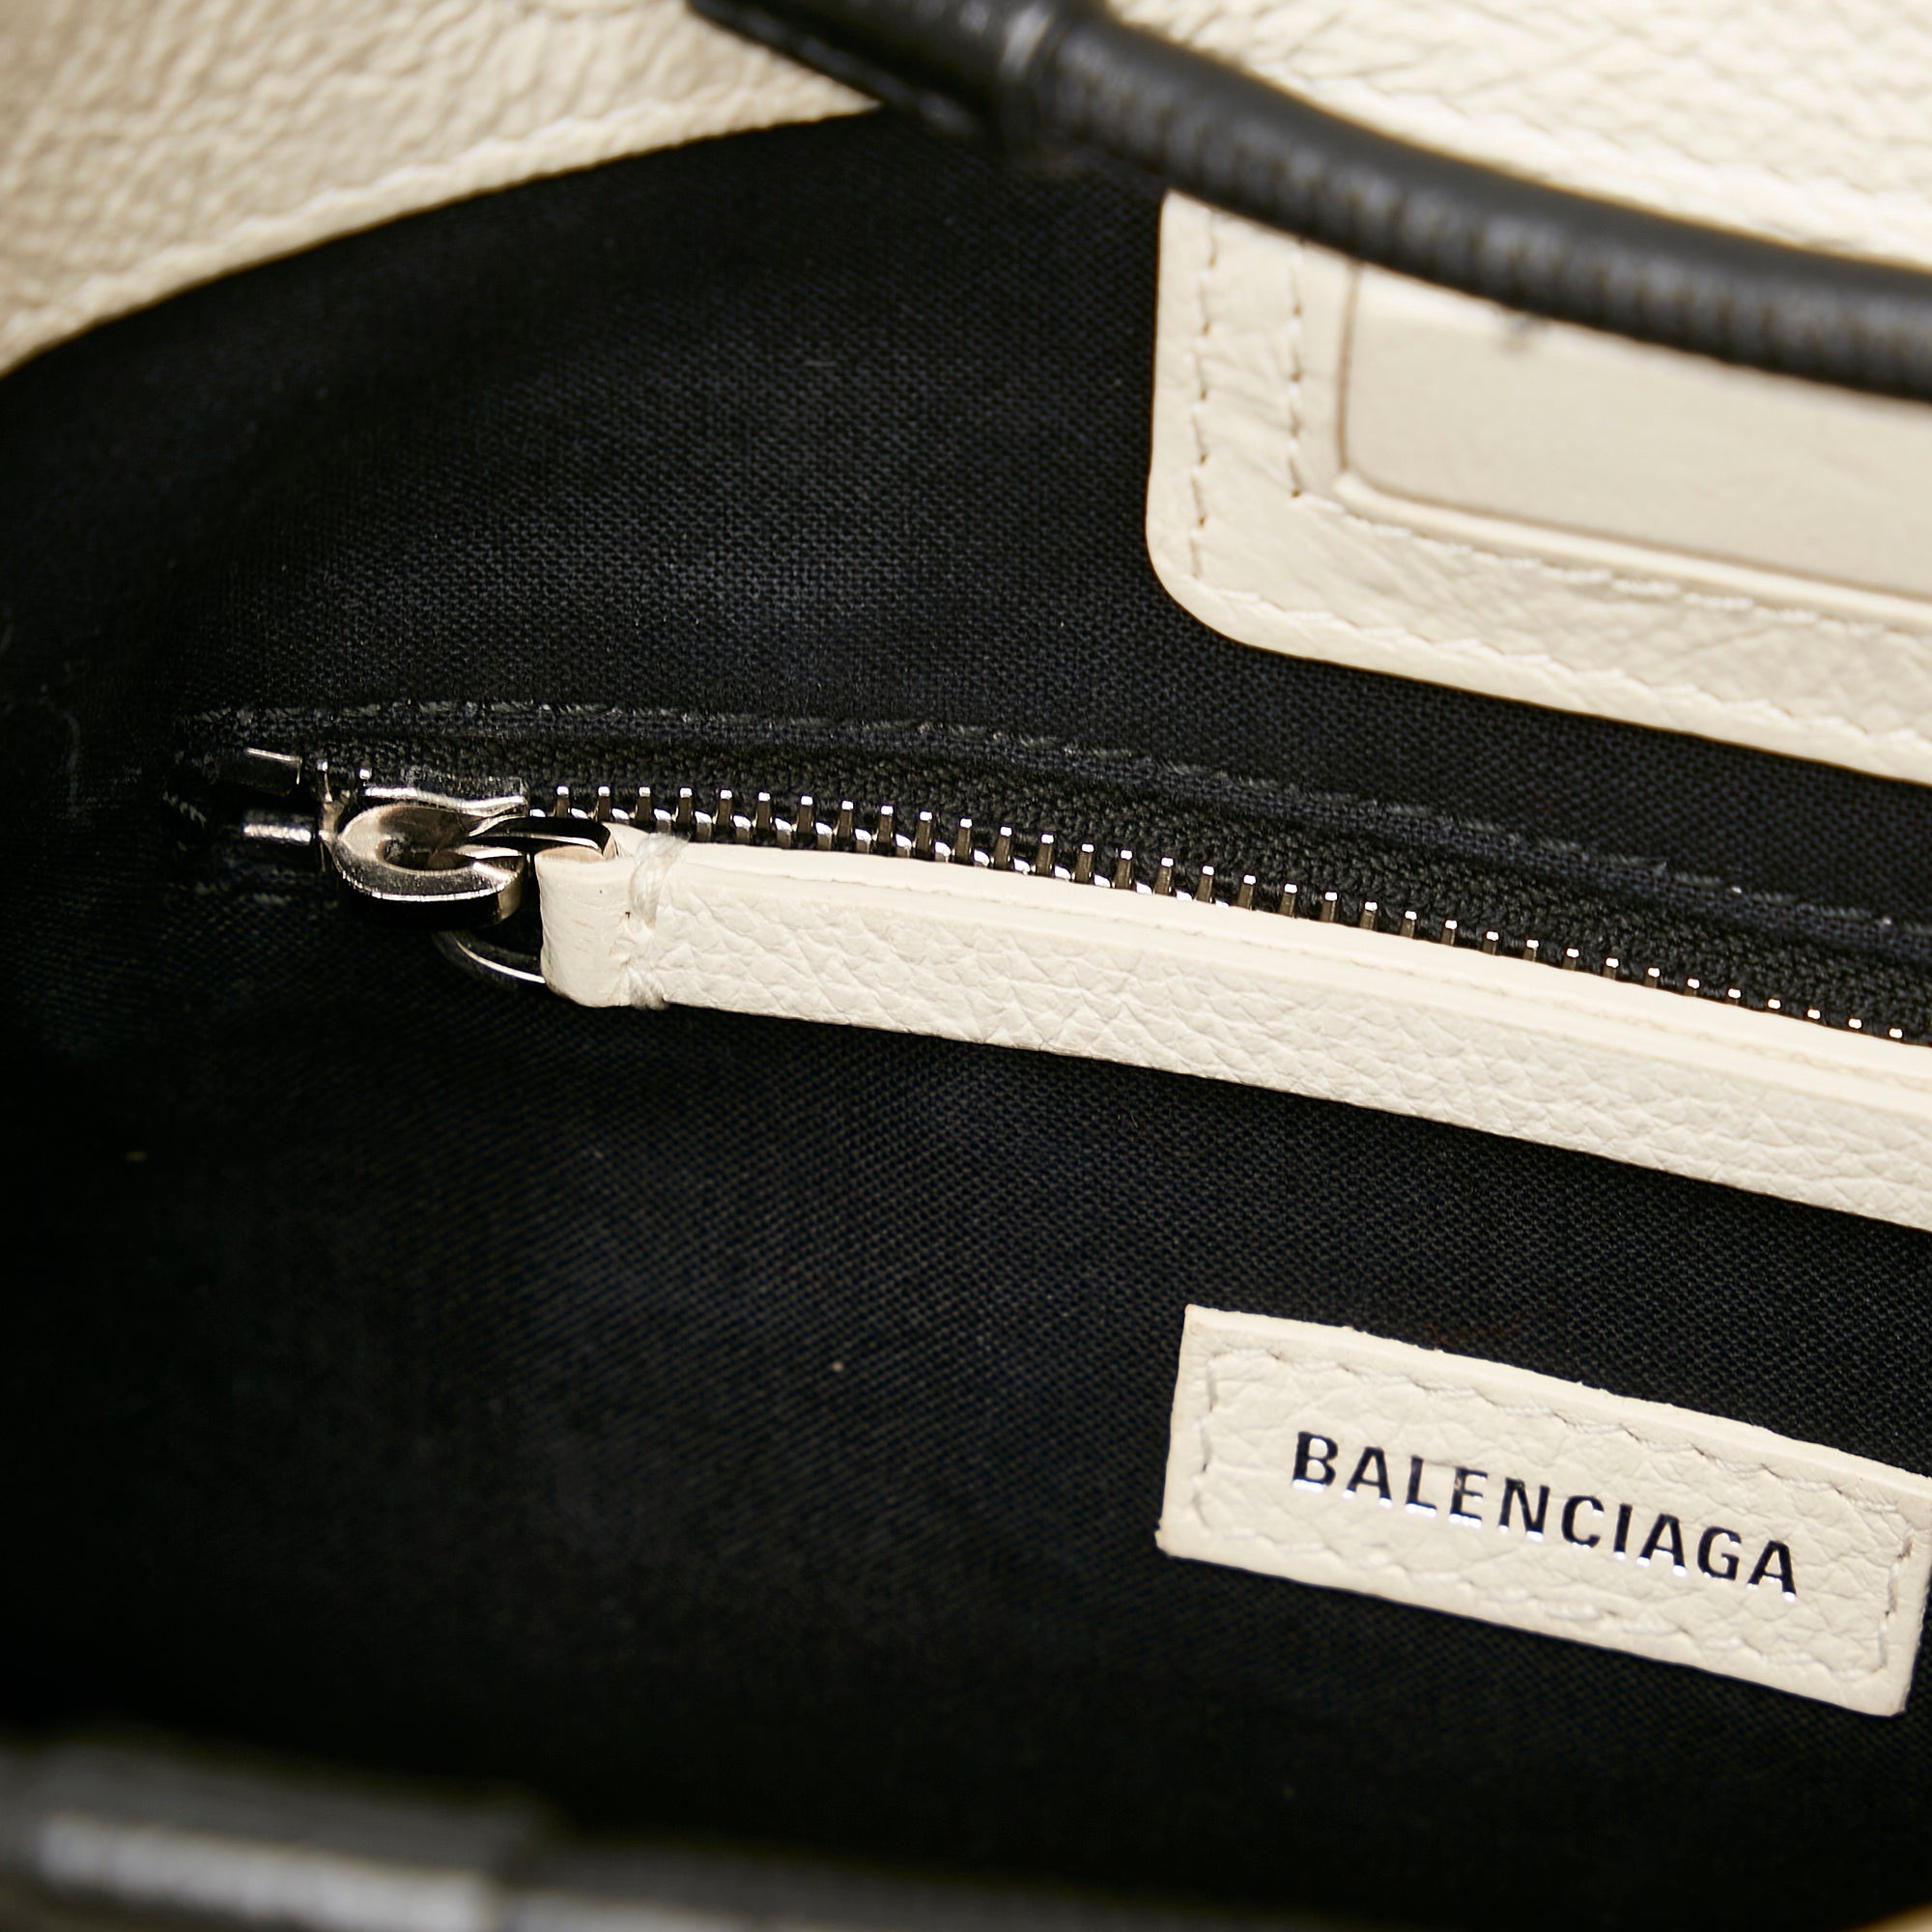 BALENCIAGA: xxs shopping tote bag in leather with logo - White